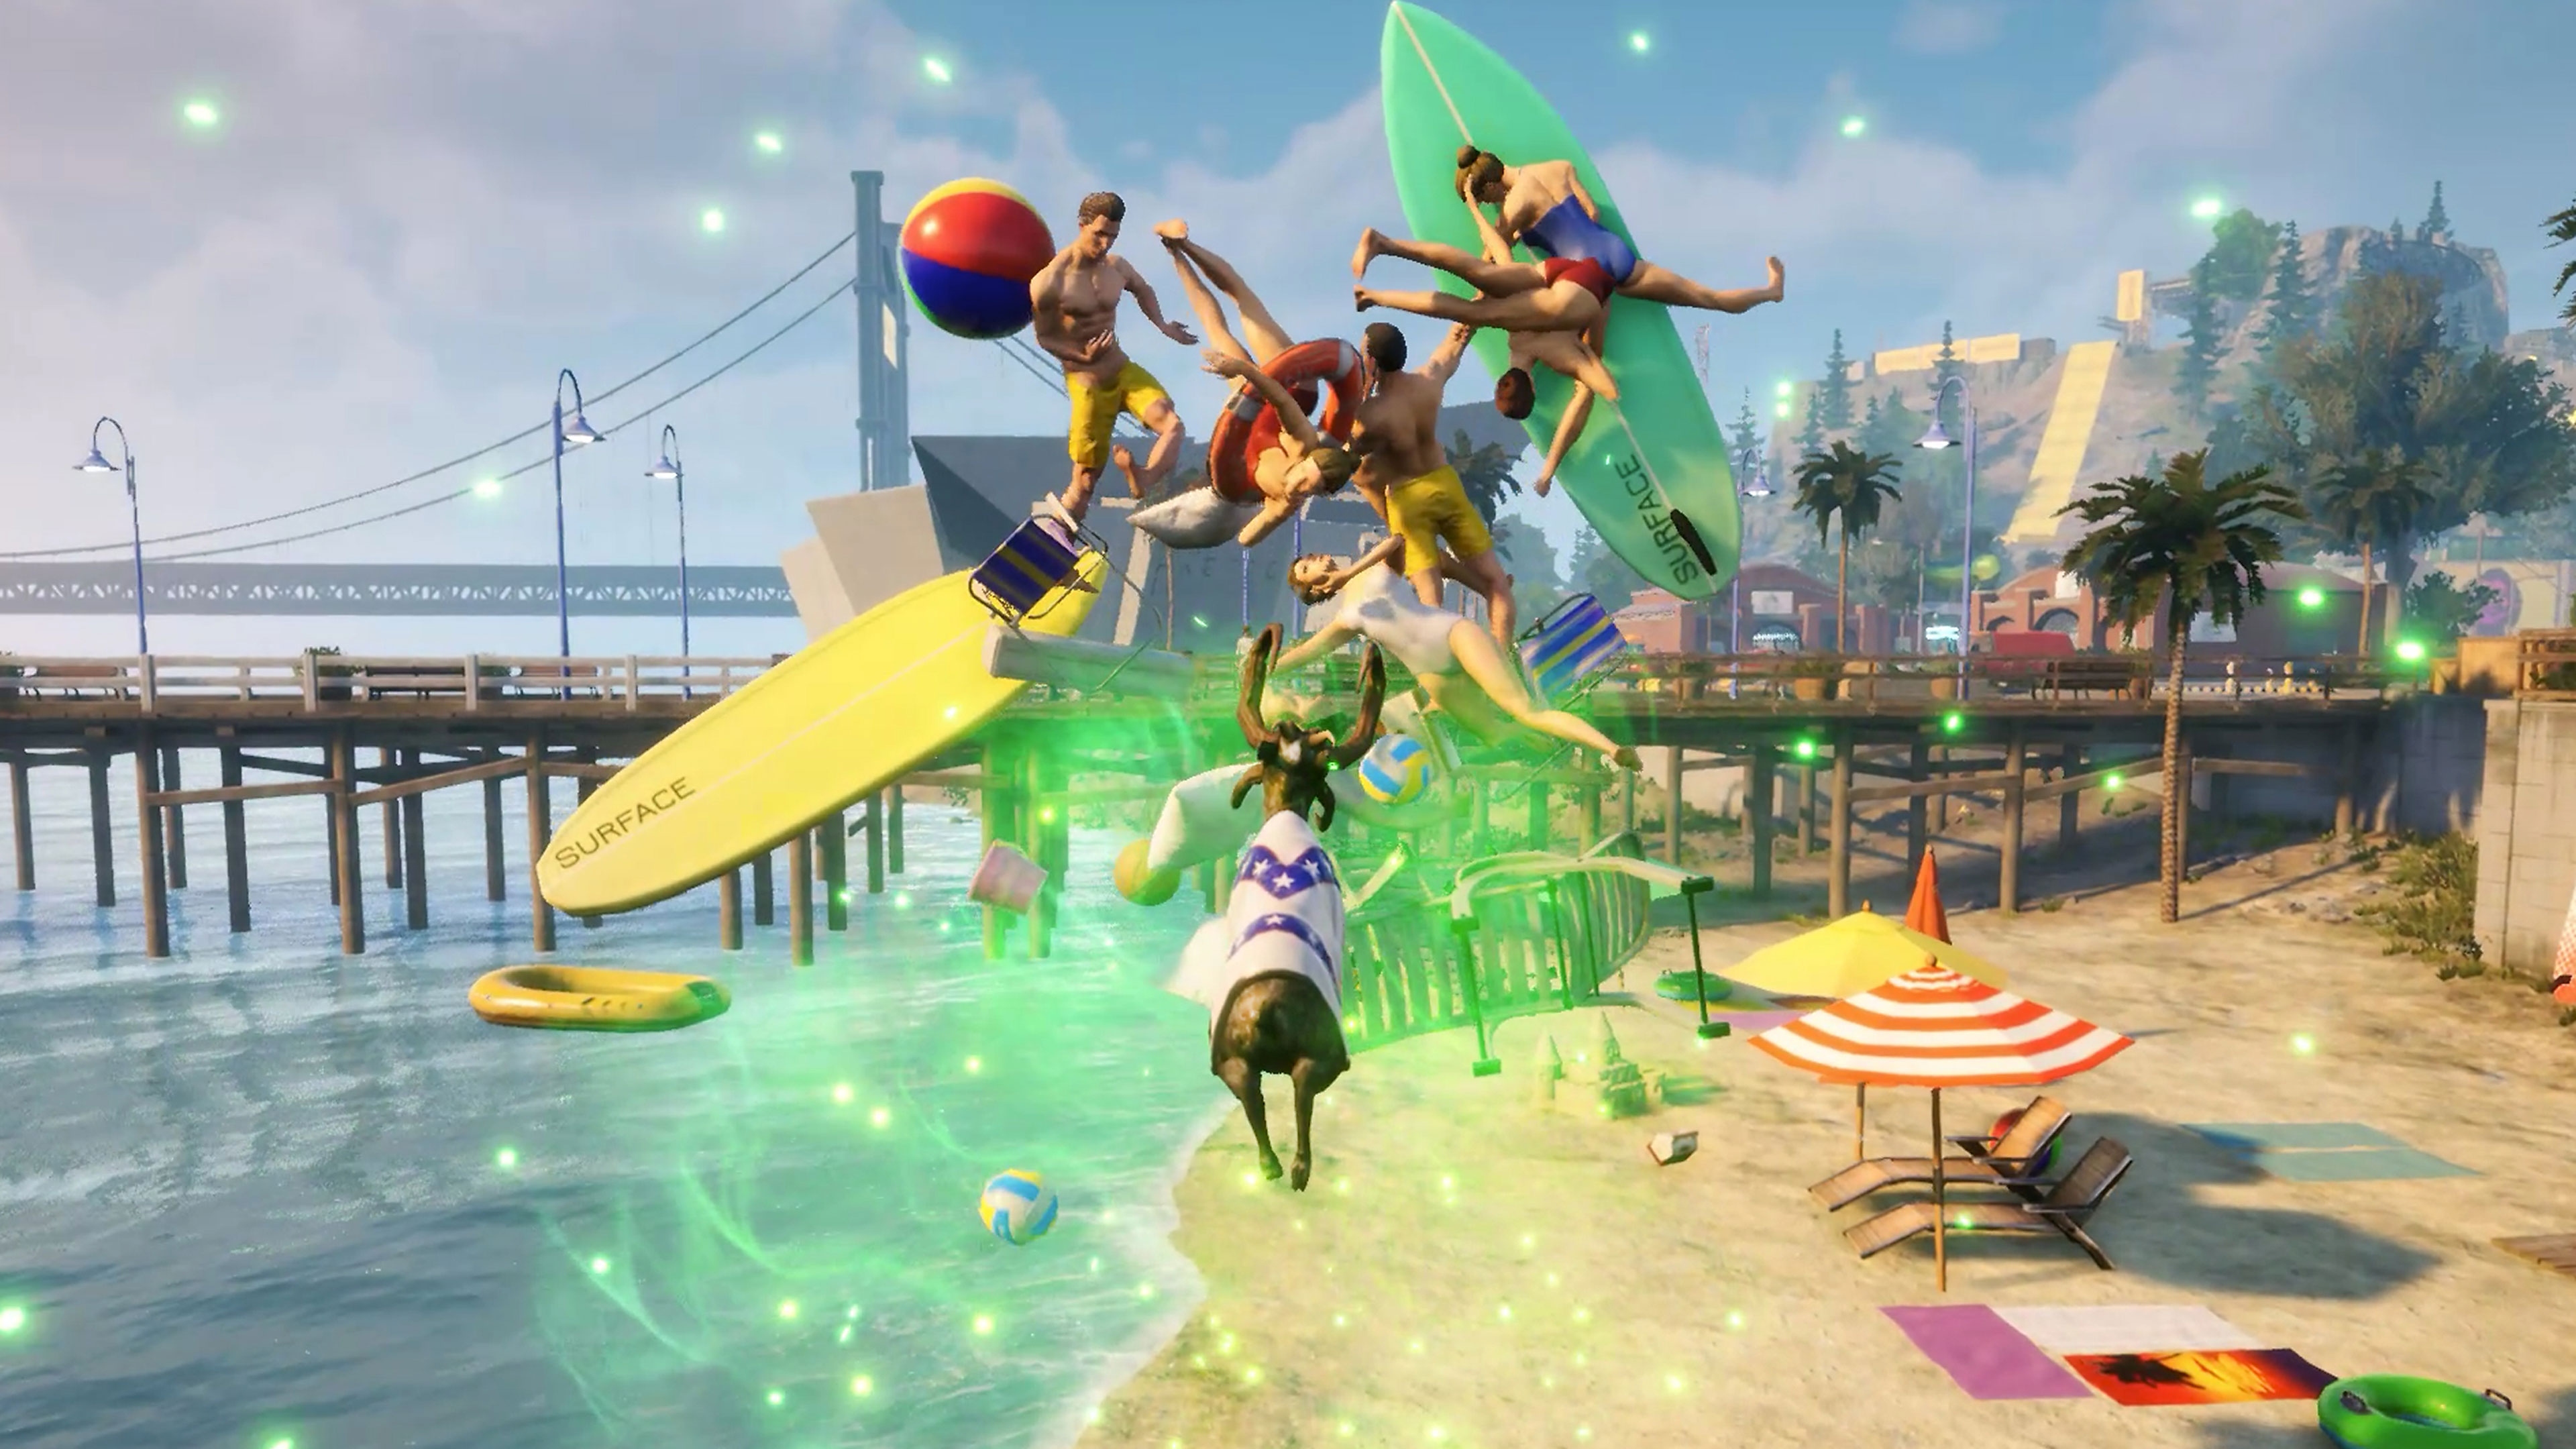 Captura de pantalla de Goat Simulator 3 que muestra una escena de playa con surfistas y tablas de surf volando por el aire